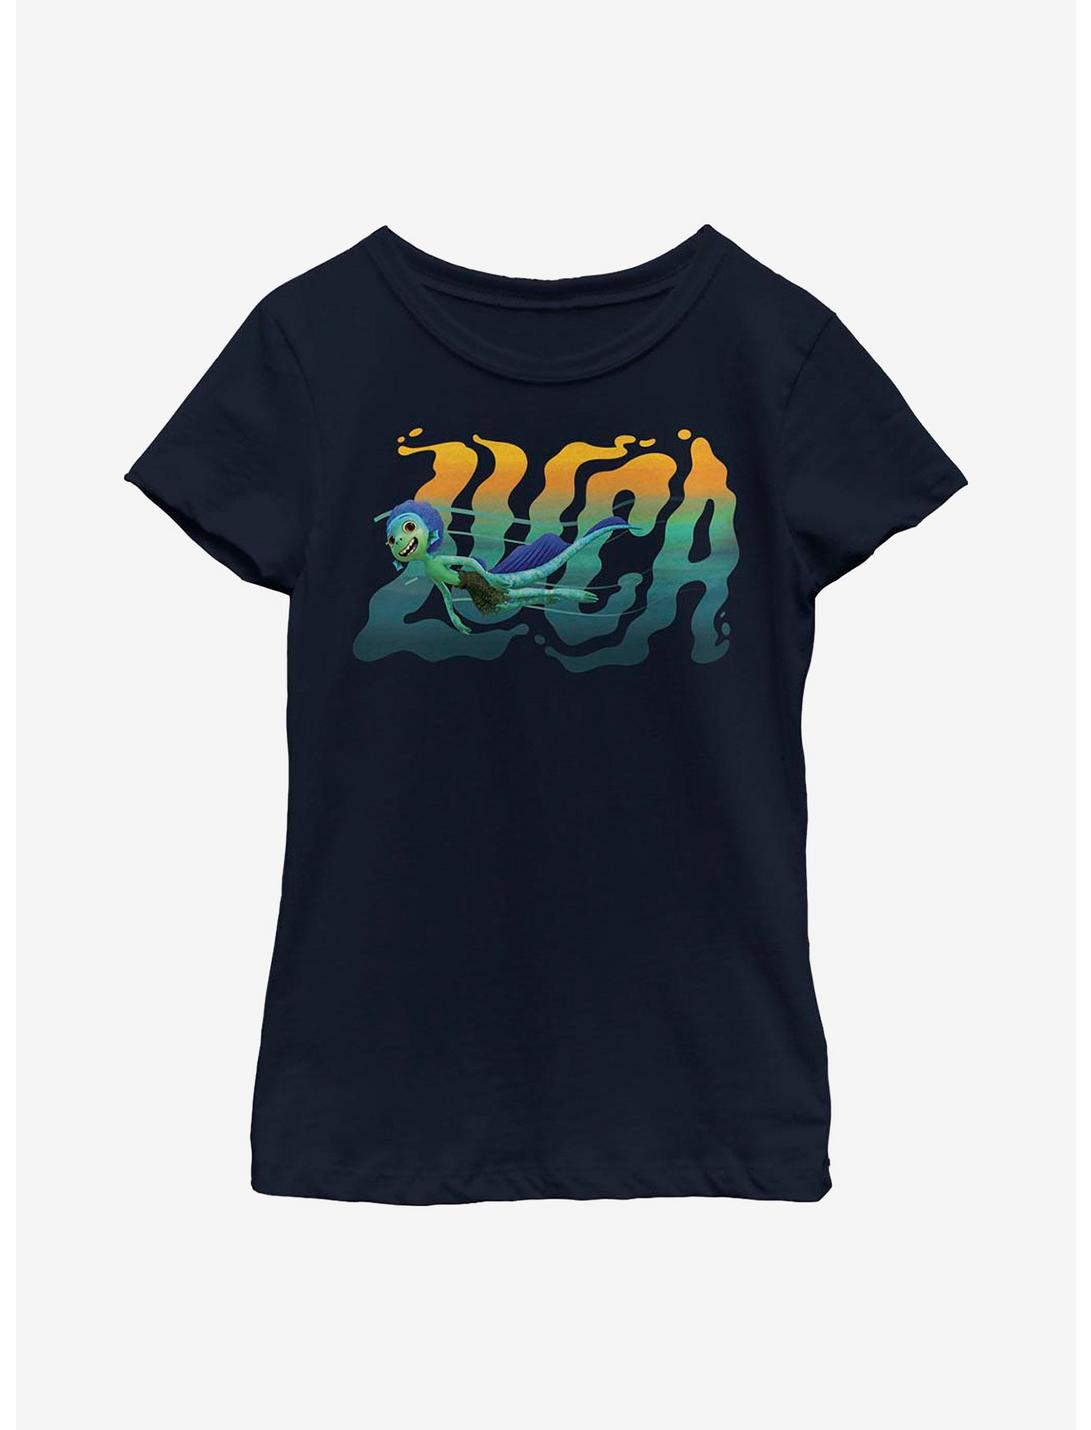 Disney Pixar Luca Swimming Youth Girls T-Shirt, NAVY, hi-res